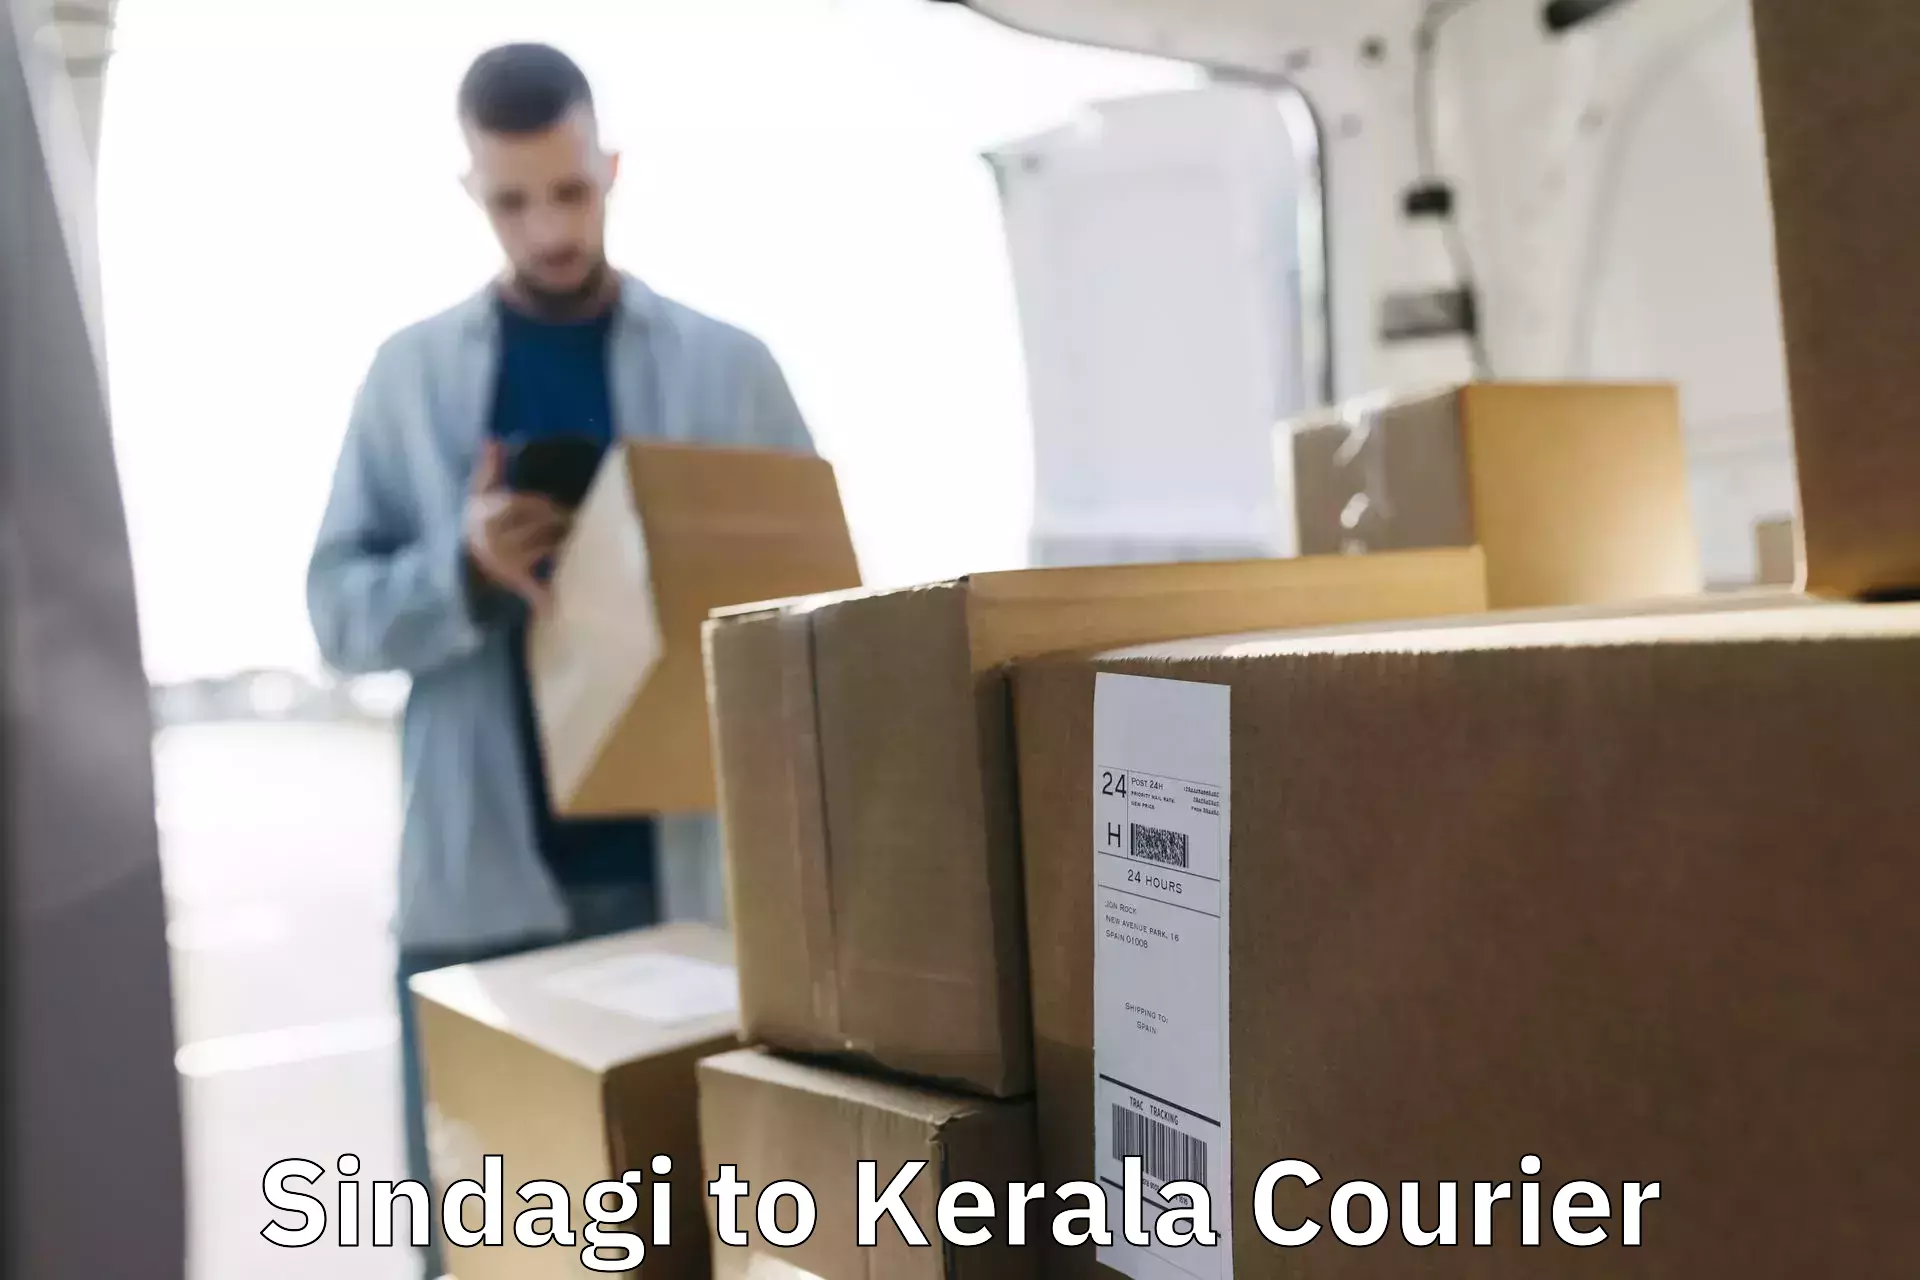 Express logistics Sindagi to Kerala